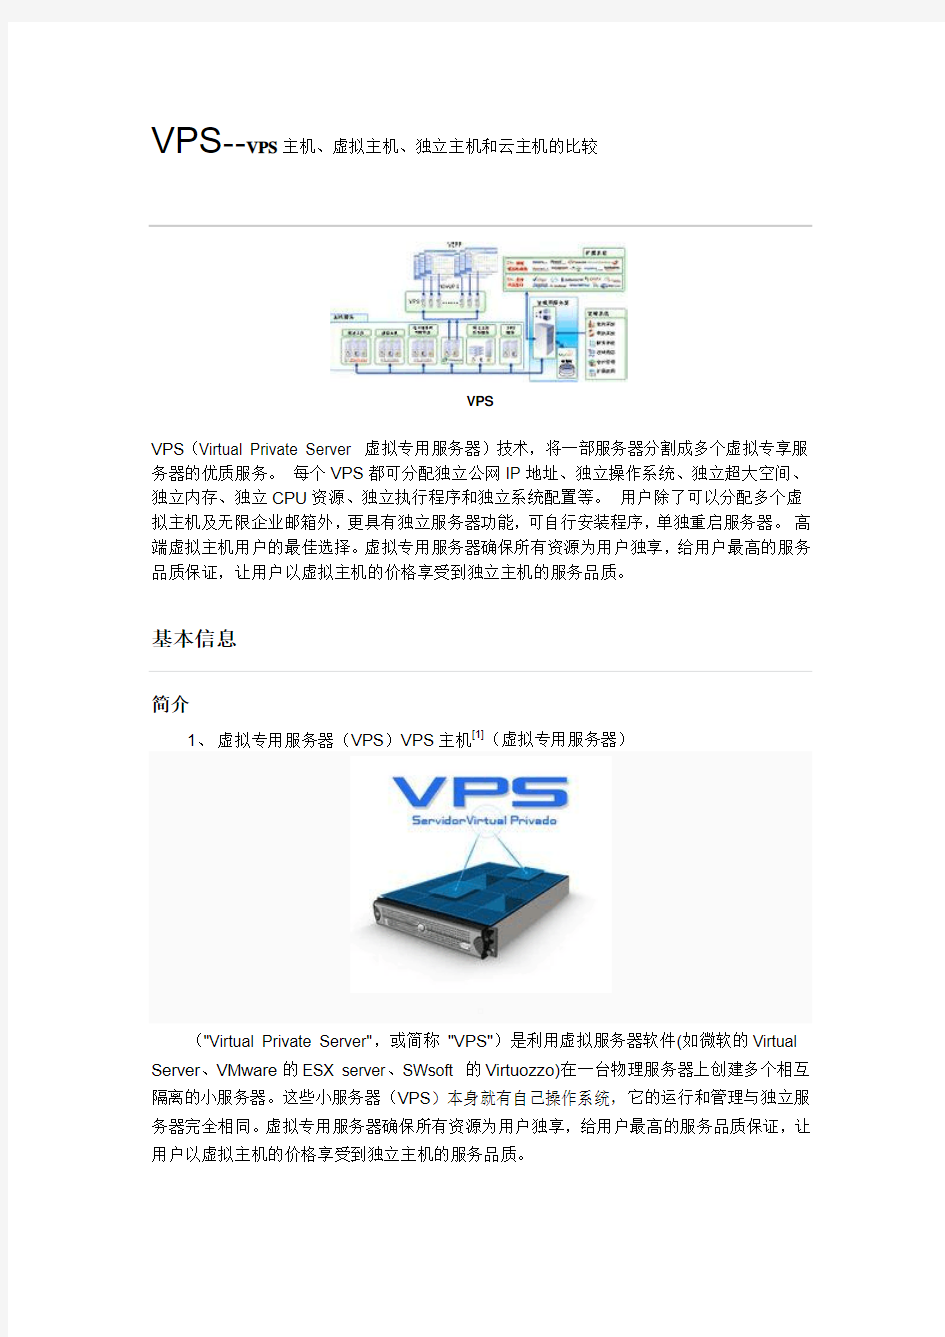 VPS主机、虚拟主机、独立主机和云主机的比较